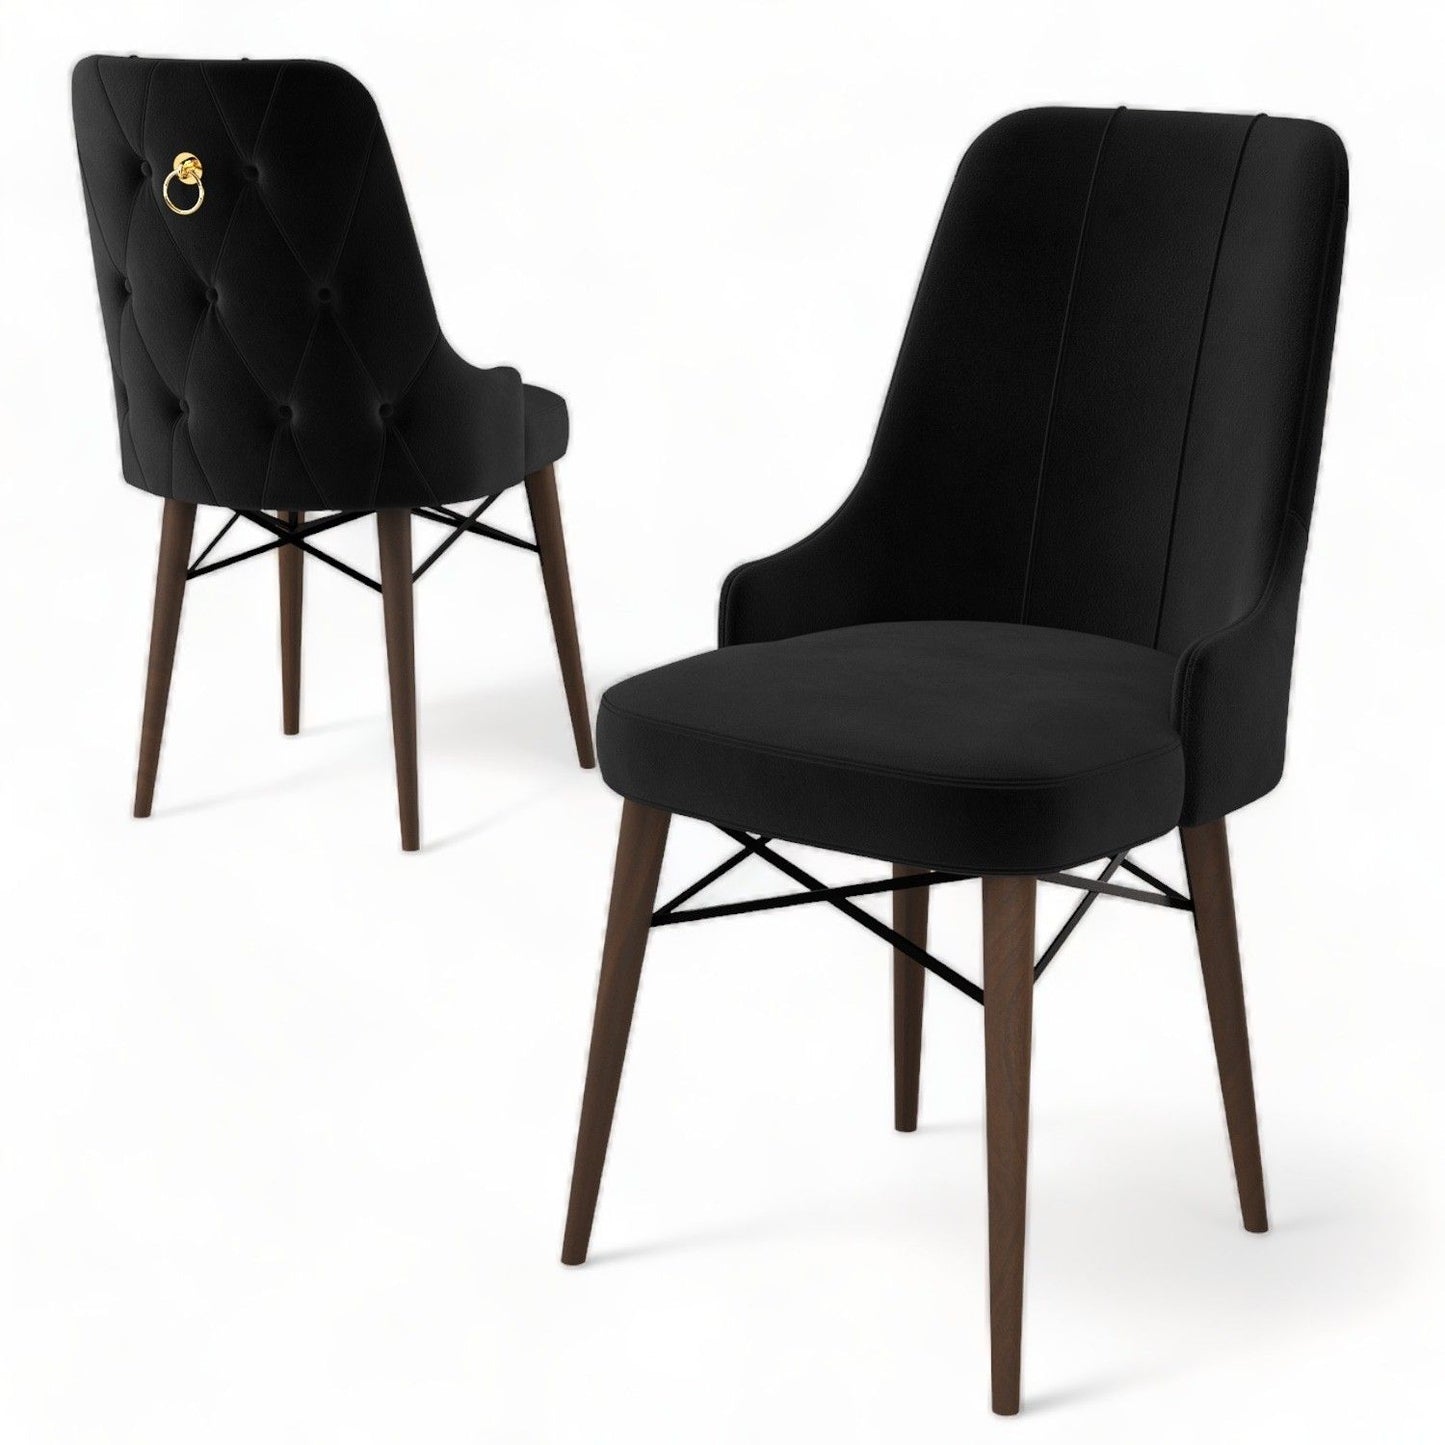 Pare - Black, Brown - Chair Set (4 Pieces)